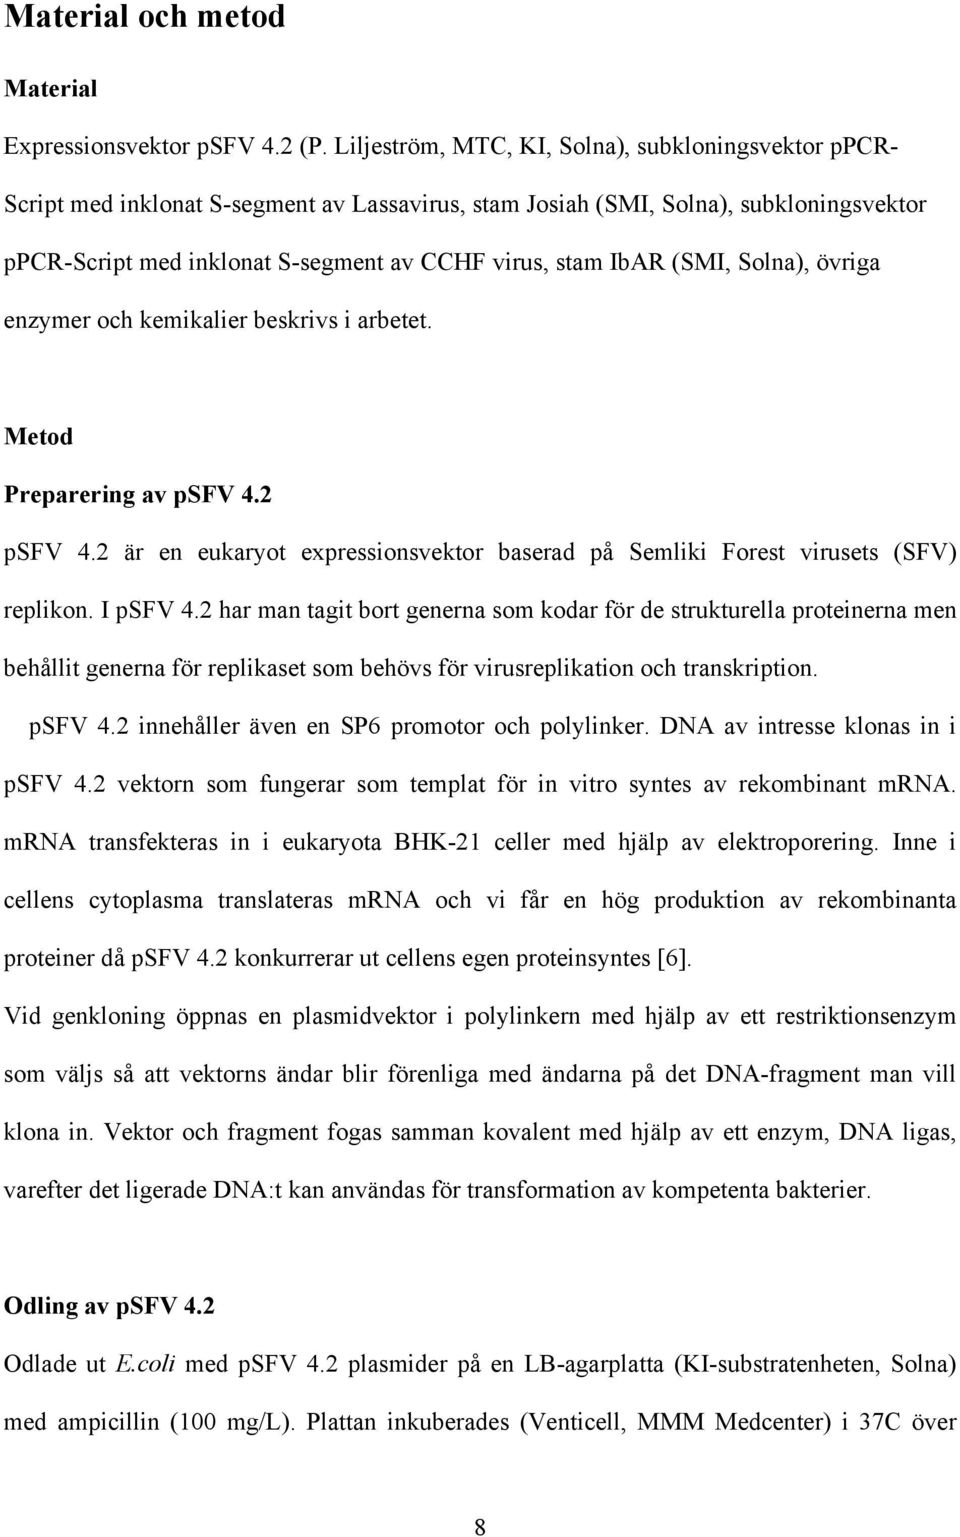 IbAR (SMI, Solna), övriga enzymer och kemikalier beskrivs i arbetet. Metod Preparering av psfv 4.2 psfv 4.2 är en eukaryot expressionsvektor baserad på Semliki Forest virusets (SFV) replikon.